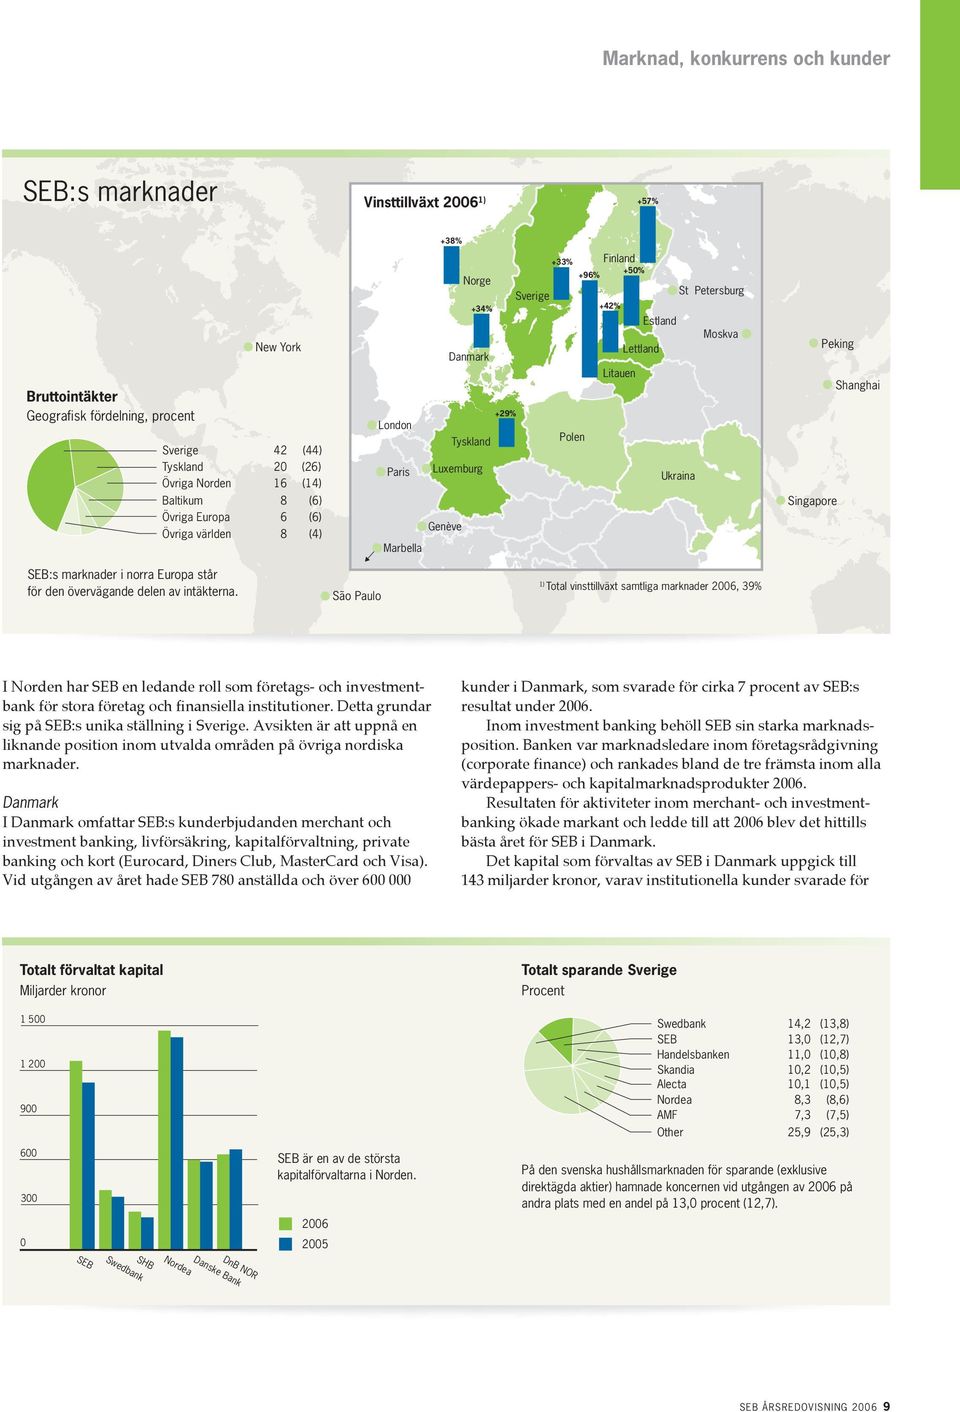 Lettland Litauen +29% London Tyskland Polen Paris Luxemburg Ukraina Genève Marbella Singapore Peking Shanghai SEB:s marknader i norra Europa står för den övervägande delen av intäkterna.